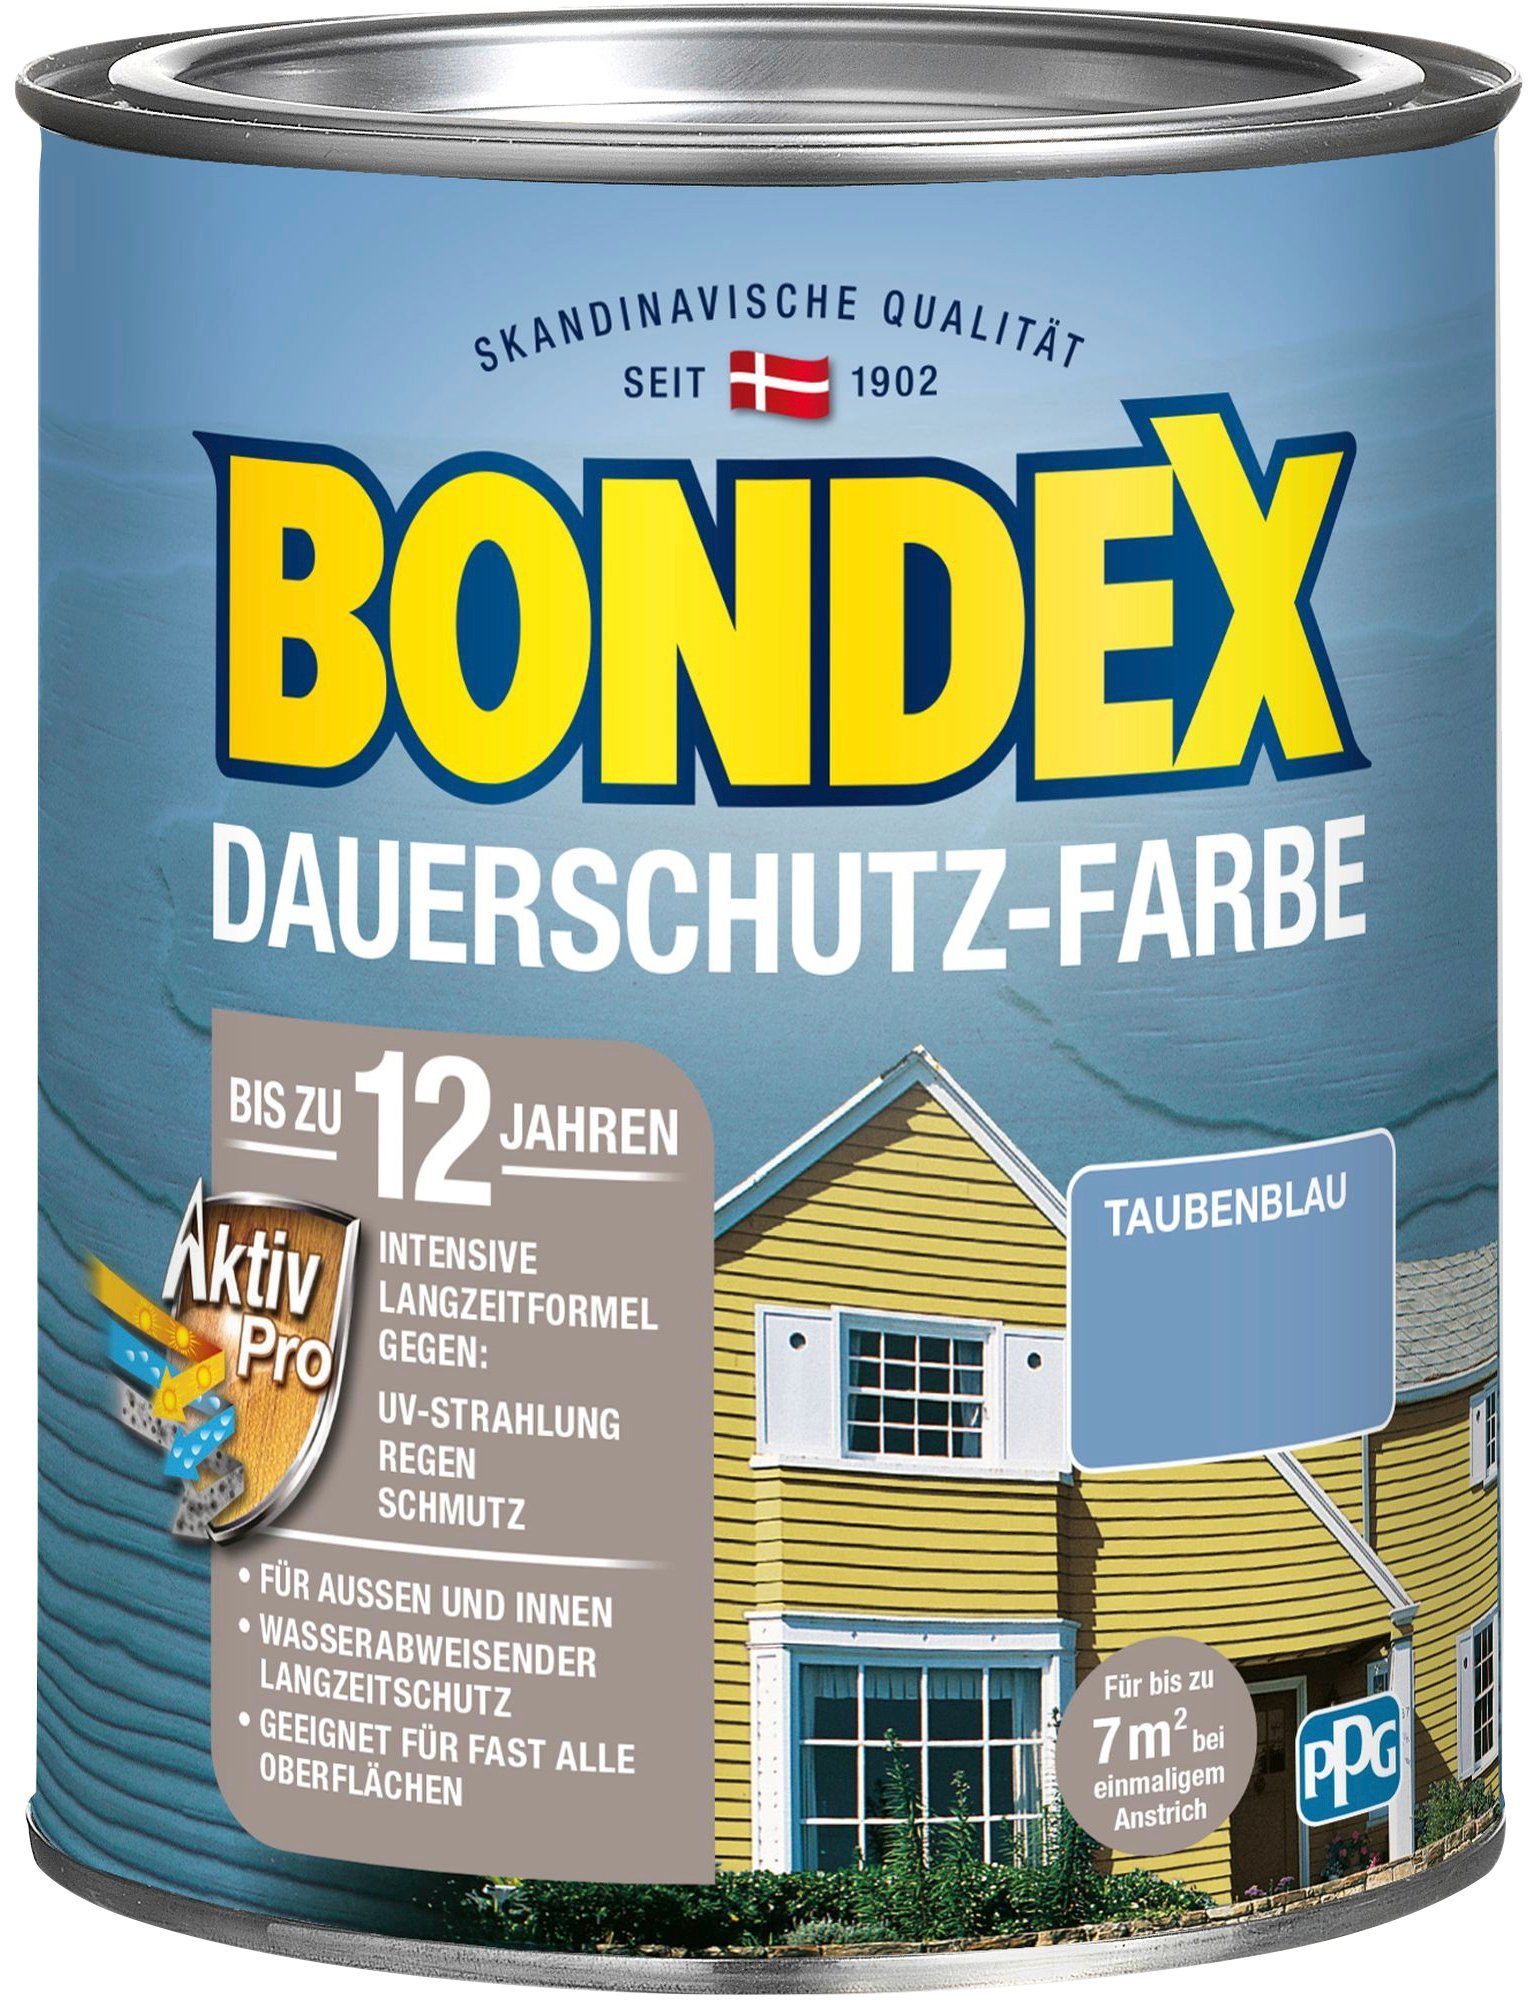 Pro Wetterschutz mit Außen Bondex DAUERSCHUTZ-FARBE, Innen, Langzeitformel Wetterschutzfarbe und Taubenblau Aktiv für